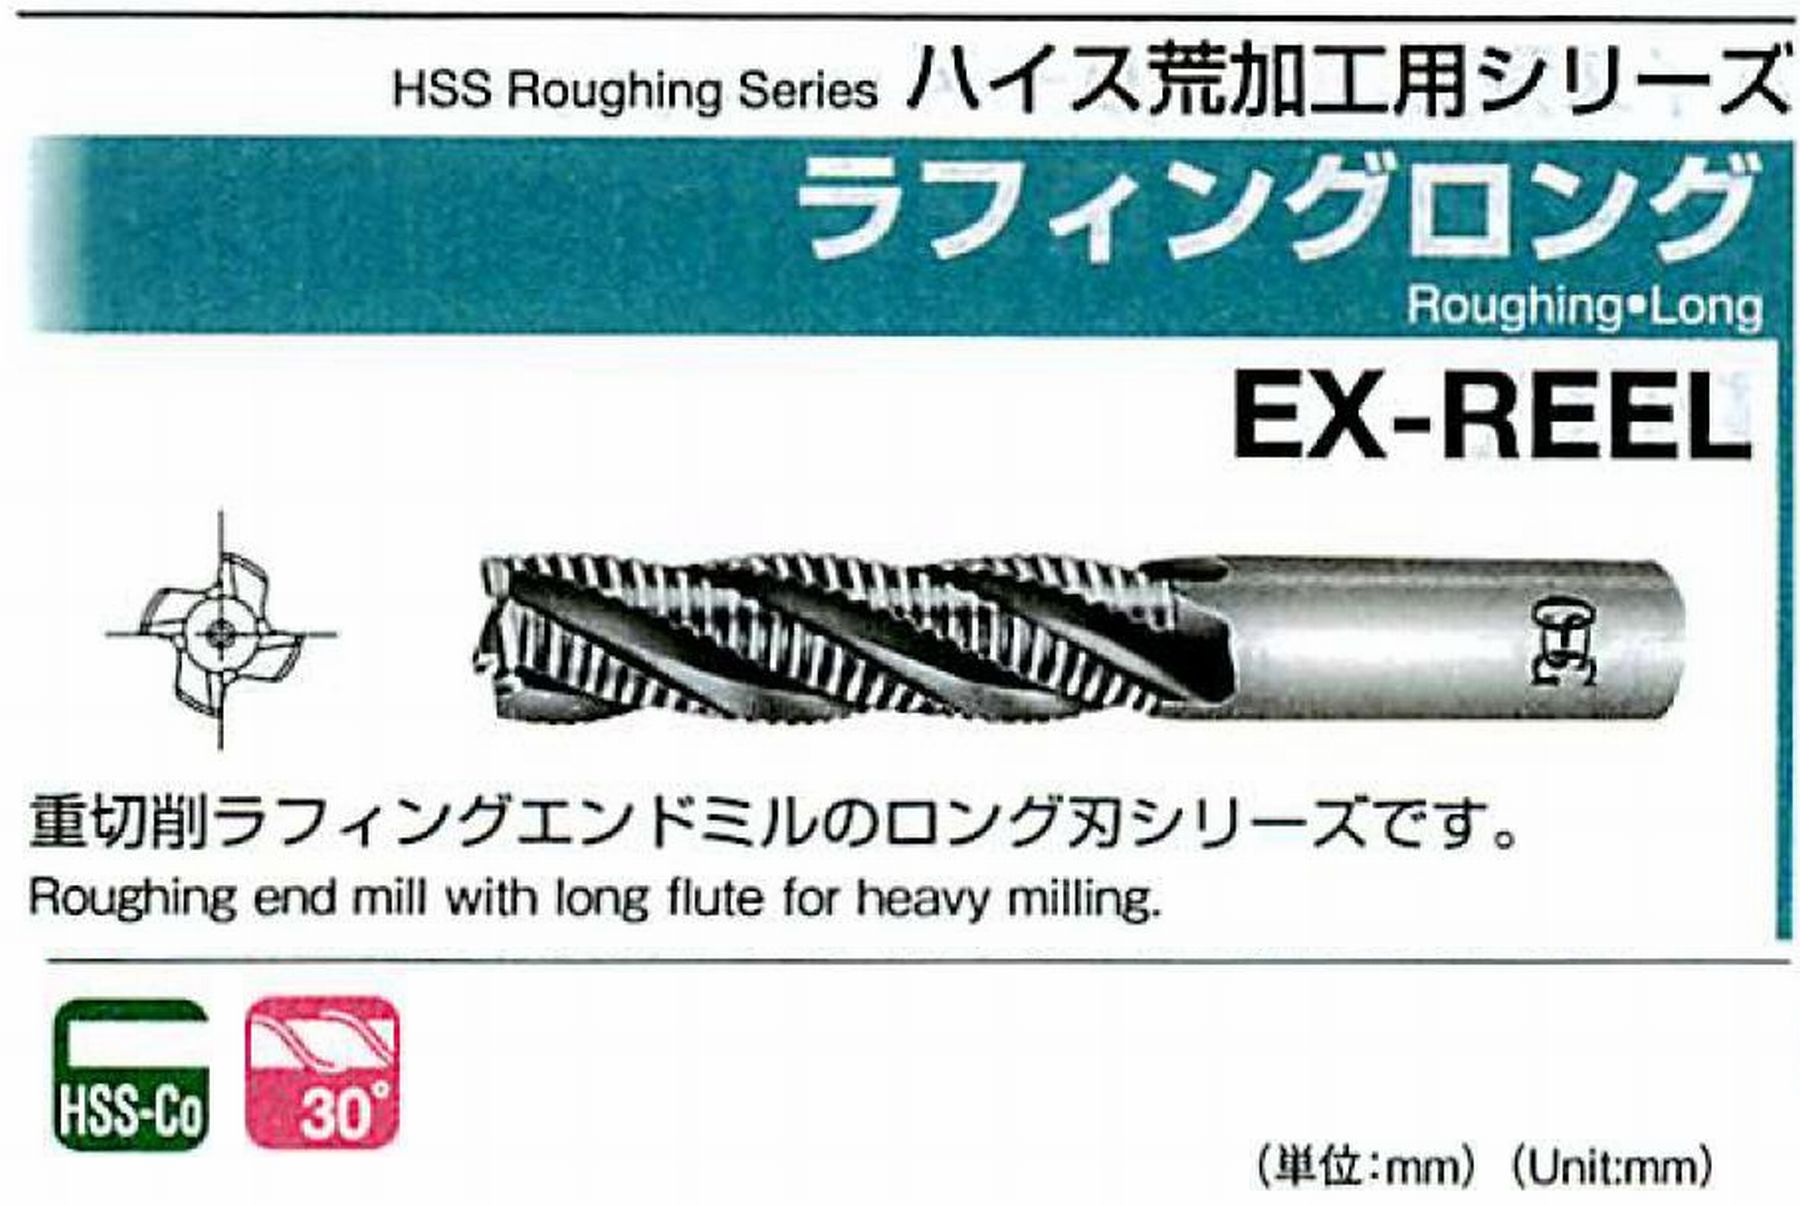 オーエスジー/OSG ラフィング ロング EX-REEL 外径23 全長141 刃長75 シャンク径20mm 刃数5